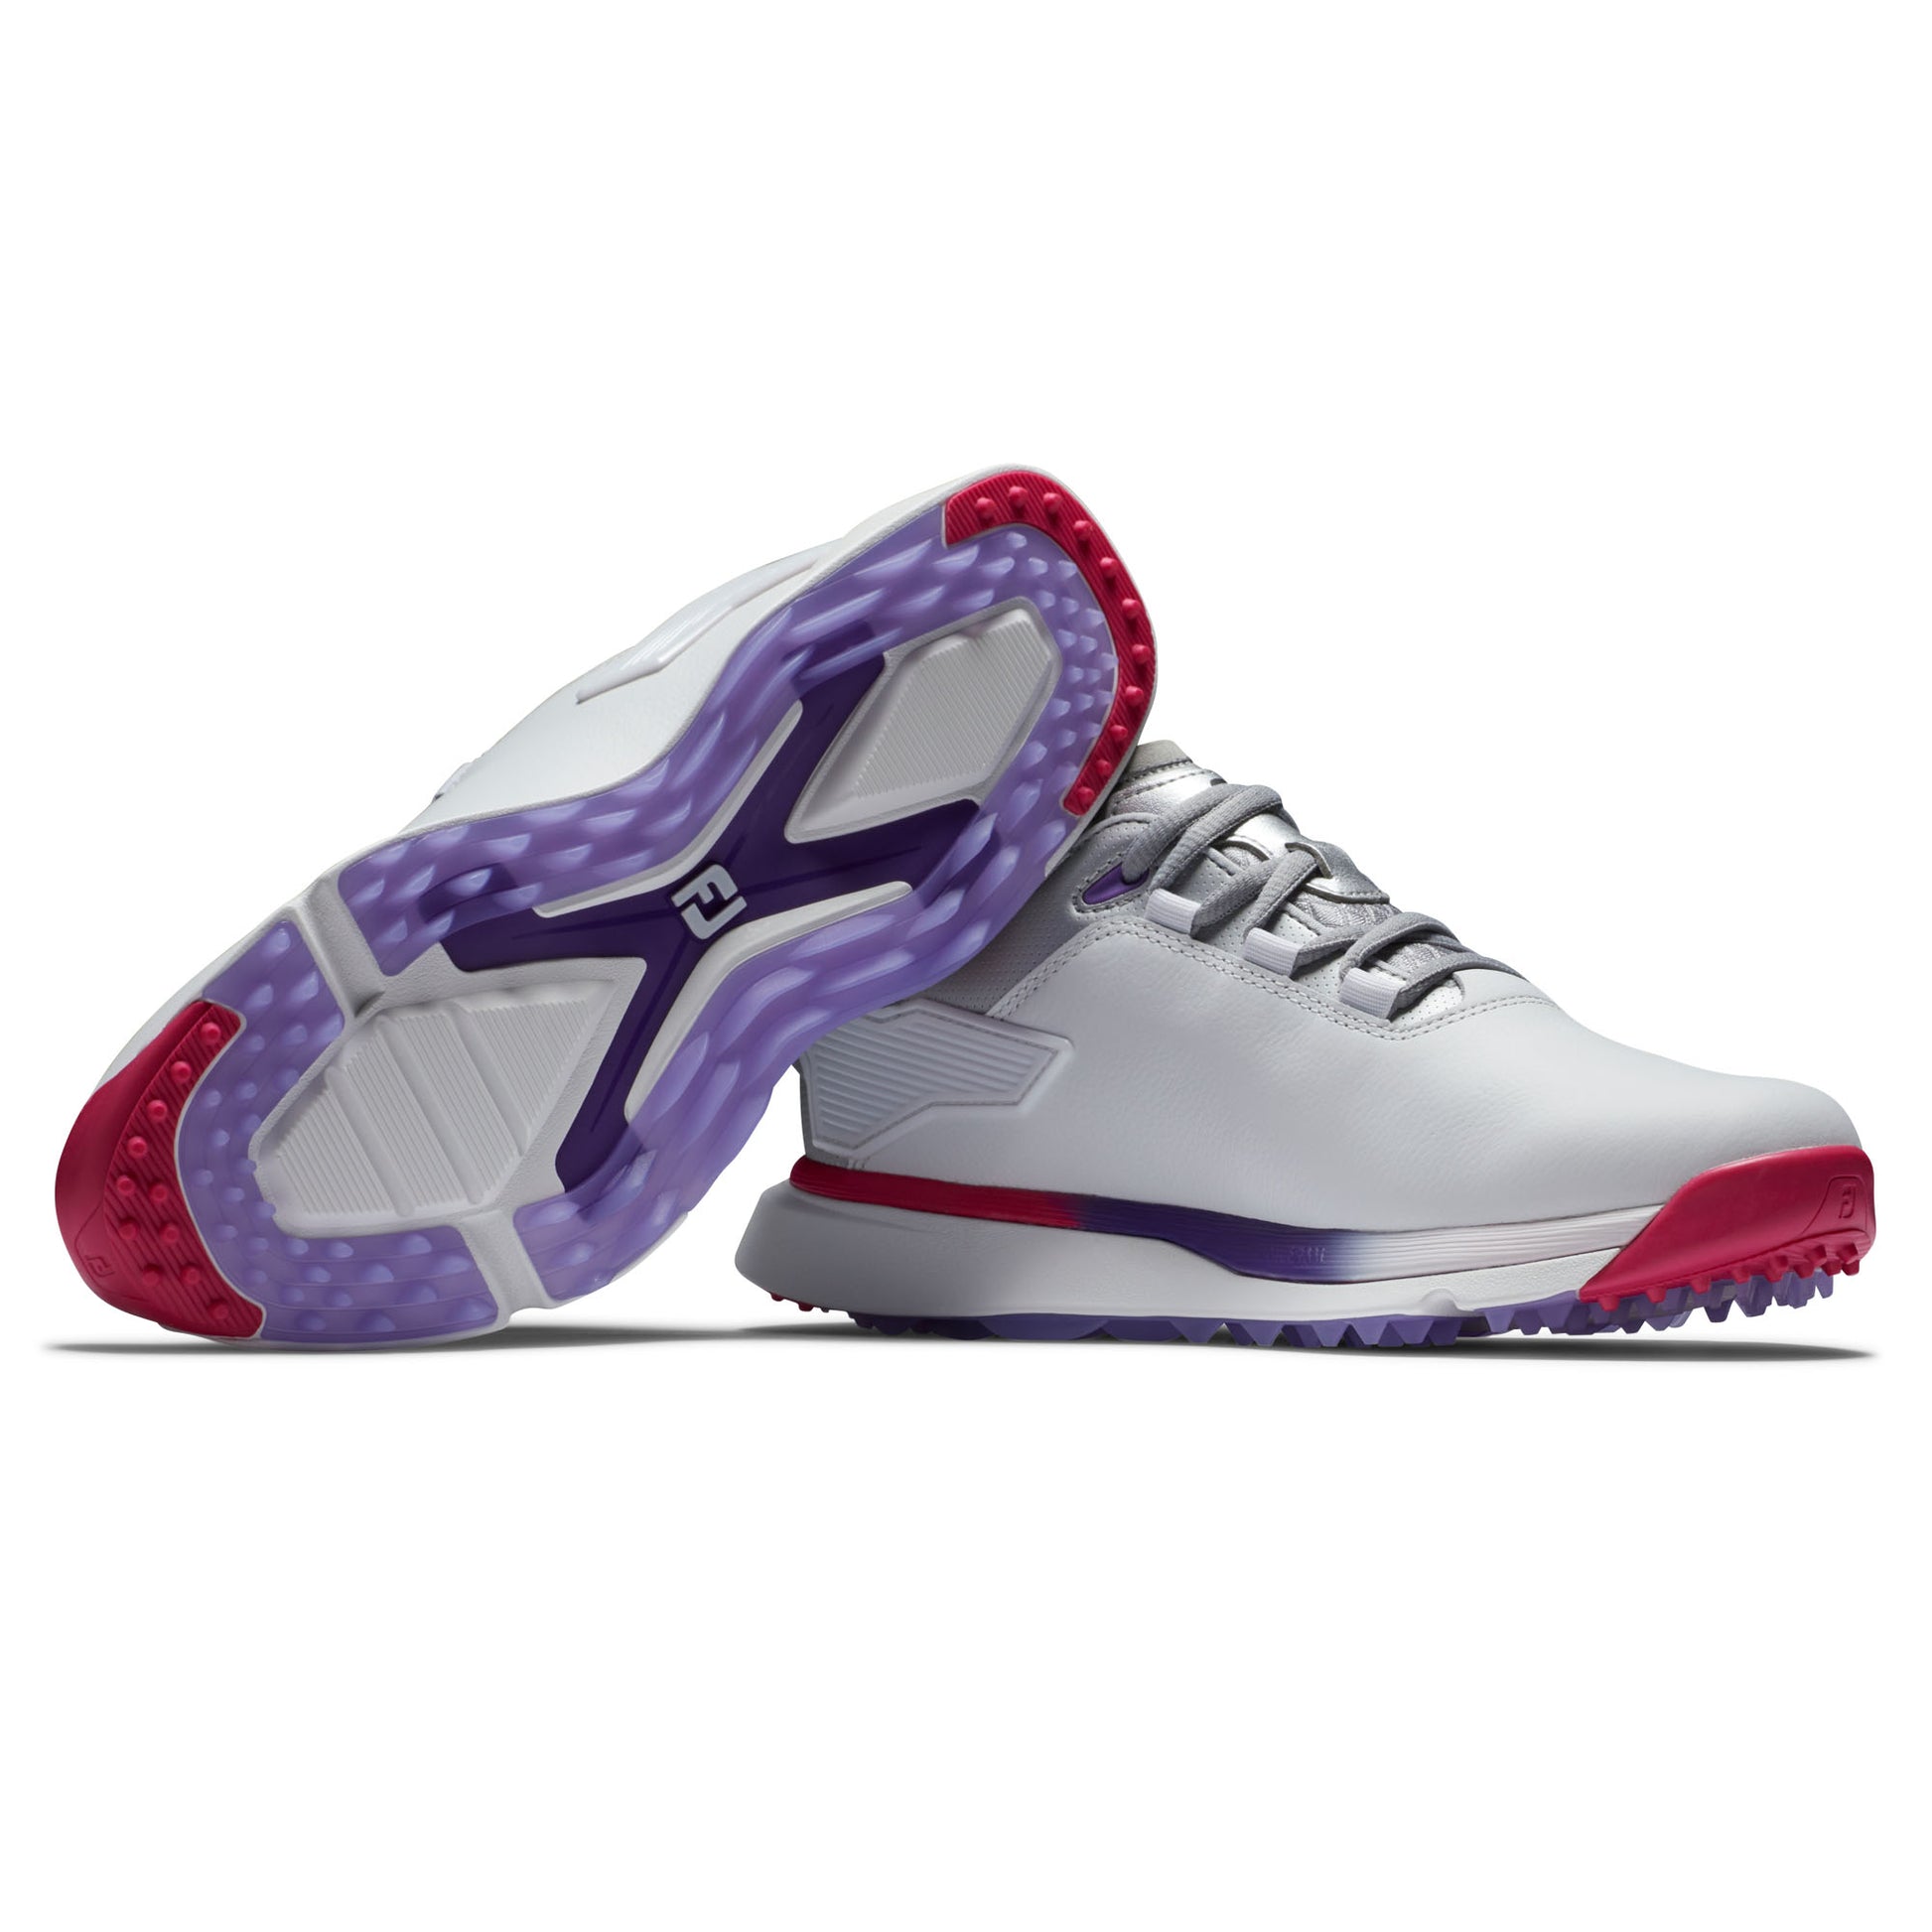 FootJoy Women's Spikeless Waterproof Pro/SLX Golf Shoes in White, Silver, Multi